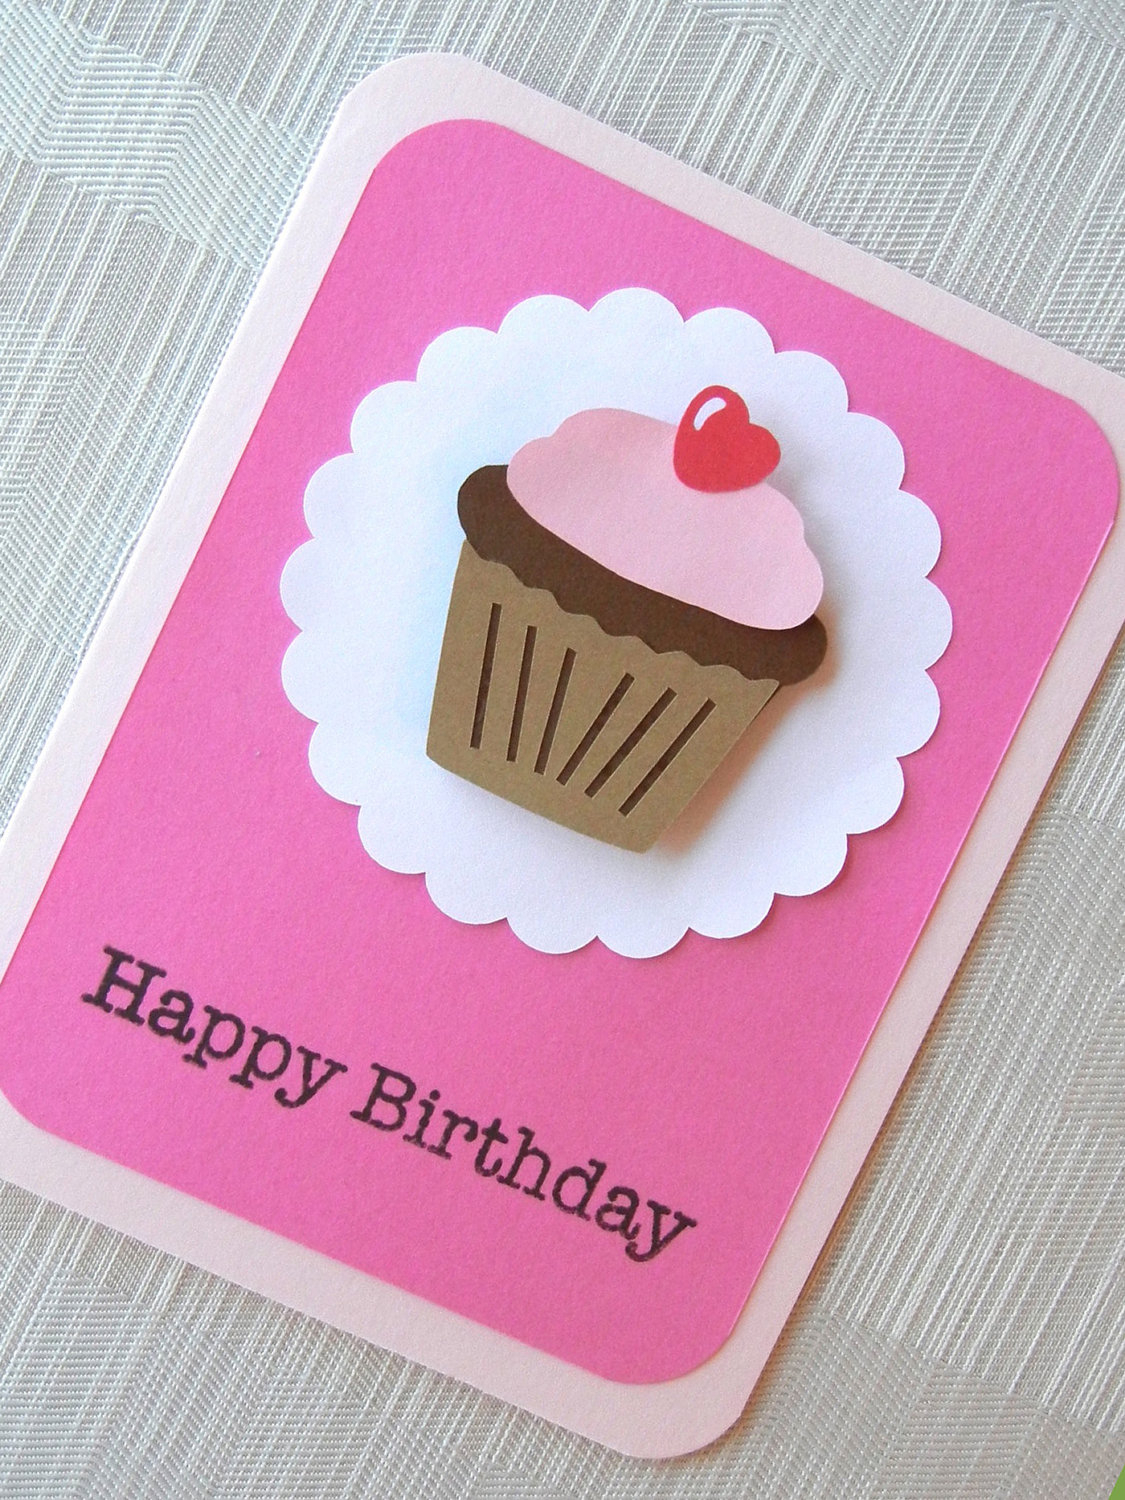 Simple Handmade Birthday Card Ideas Easy Diy Birthday Cards Ideas And Designs